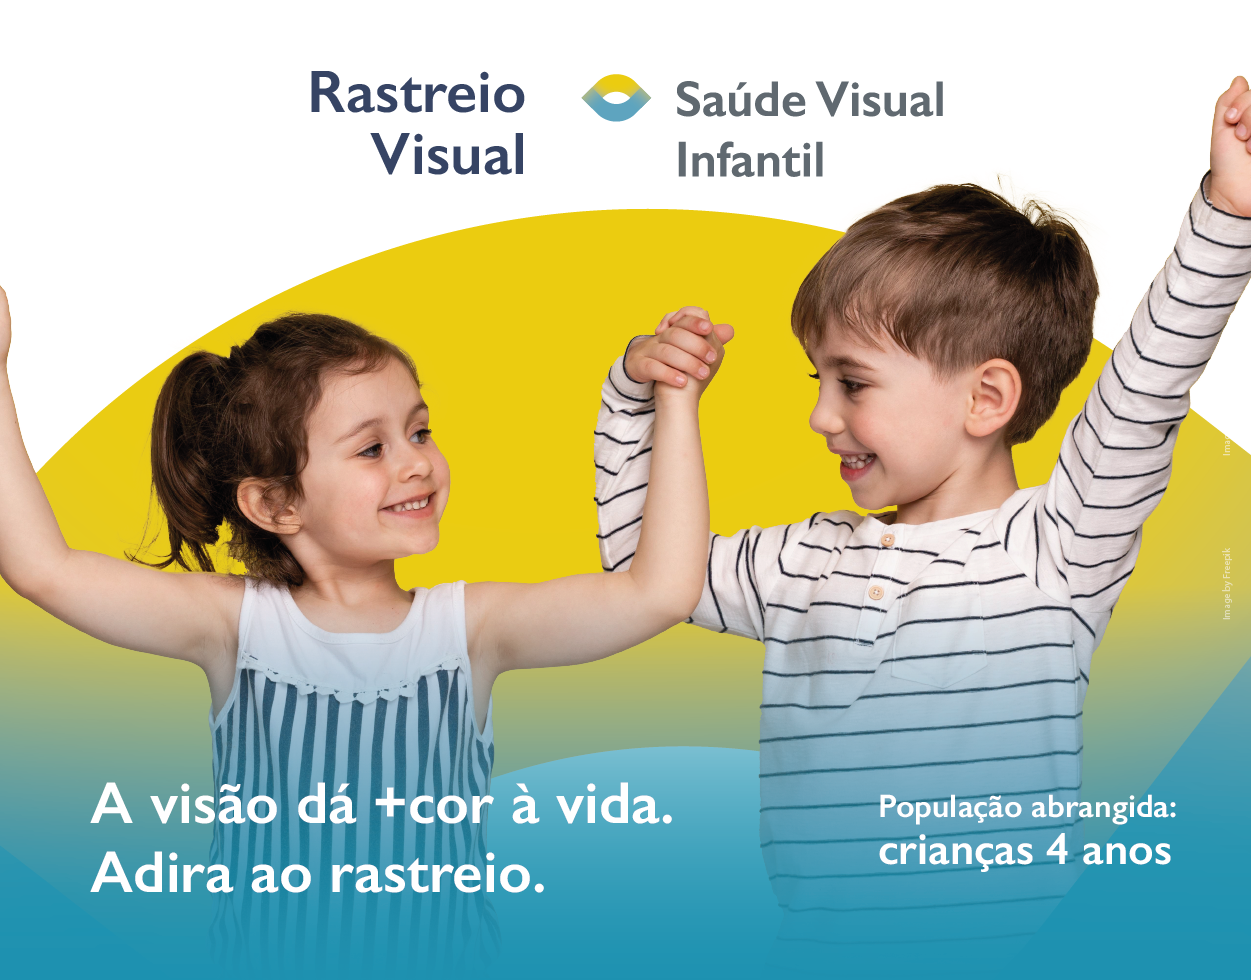 Rastreio Saúde Visual Infantil